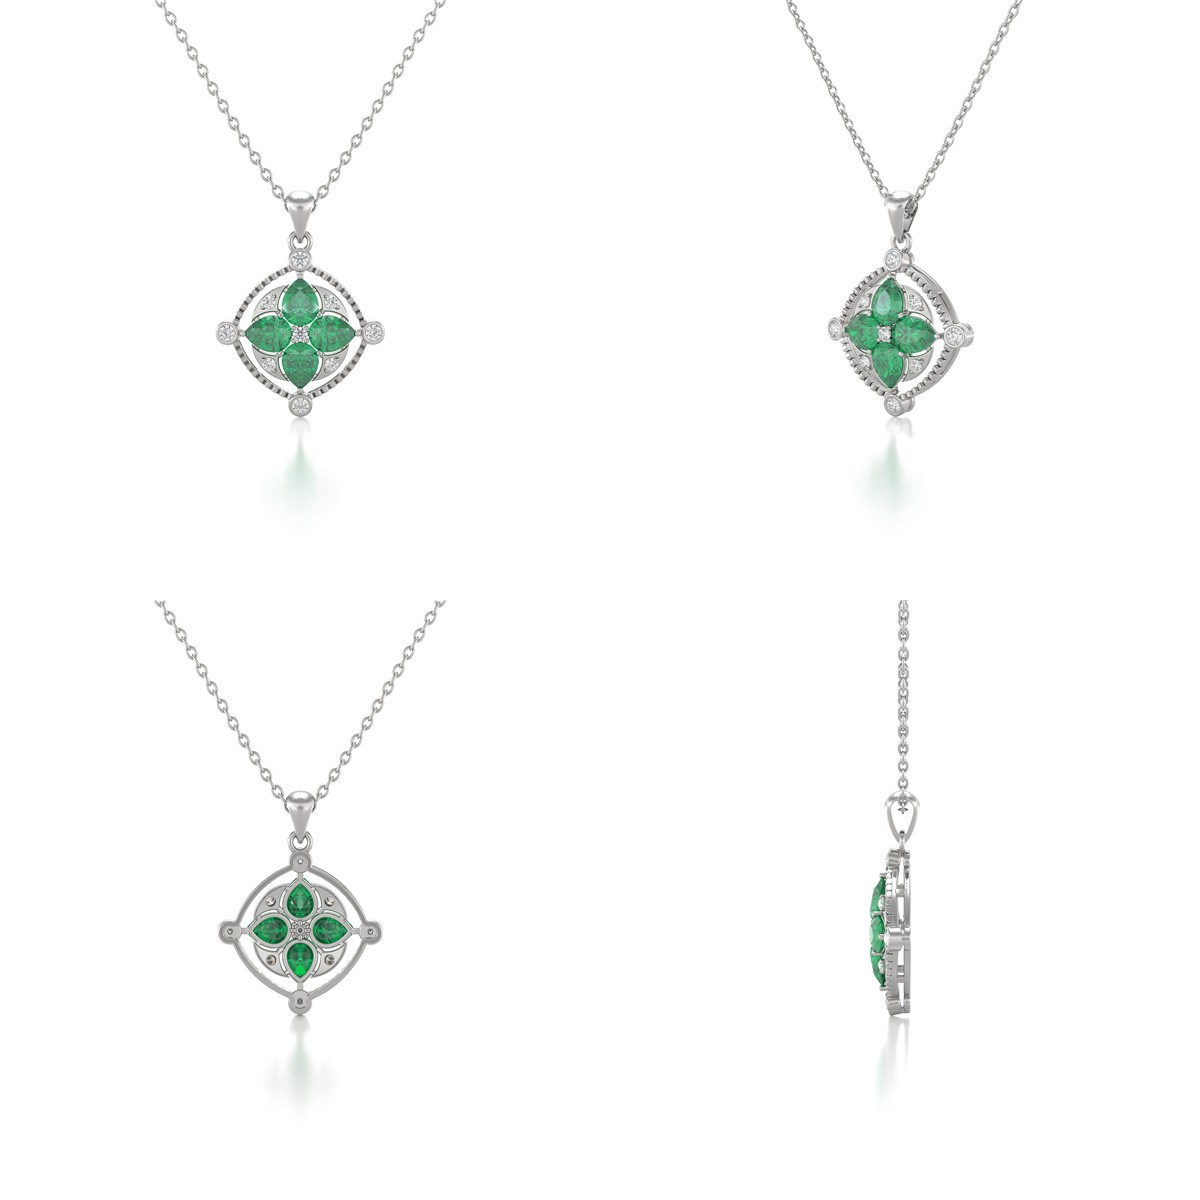 Collier Pendentif Or Blanc Médaillon Emeraude et Diamants - Bijou d'Exception pour un Anniversaire Inoubliable | Aden - vue 2